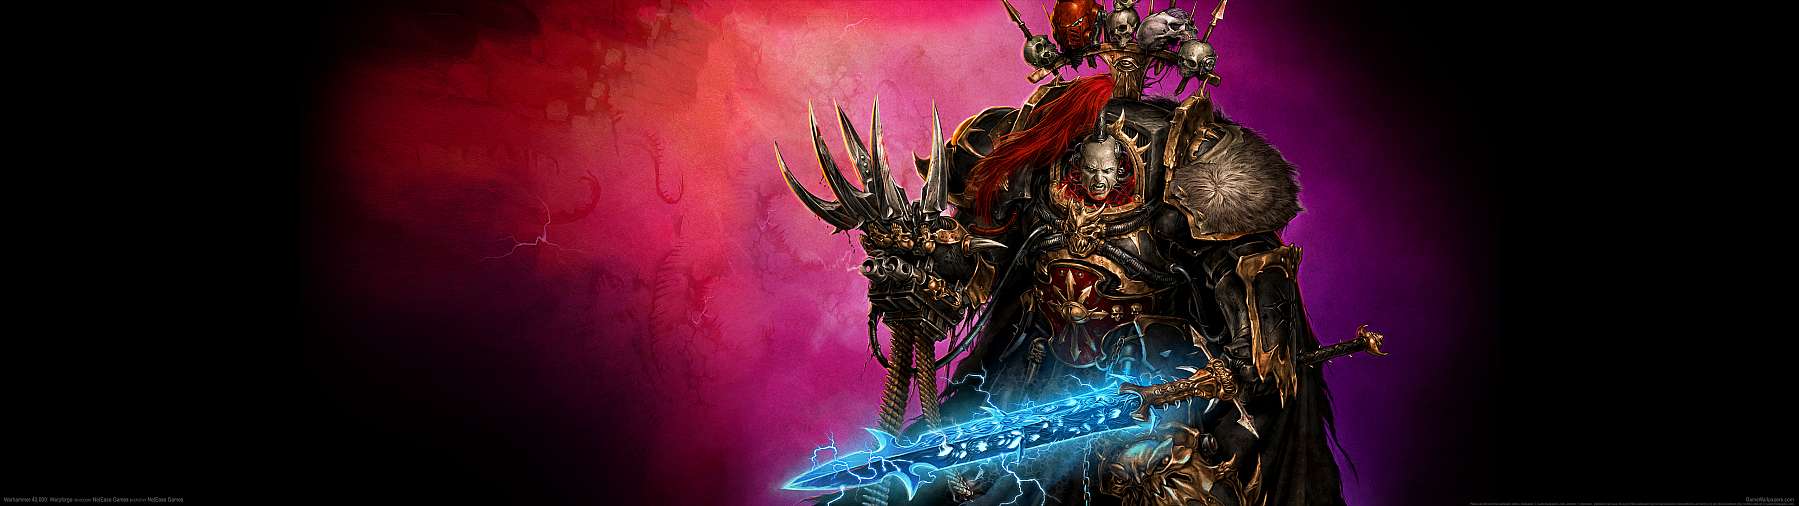 Warhammer 40,000: Warpforge superwide fond d'cran 02